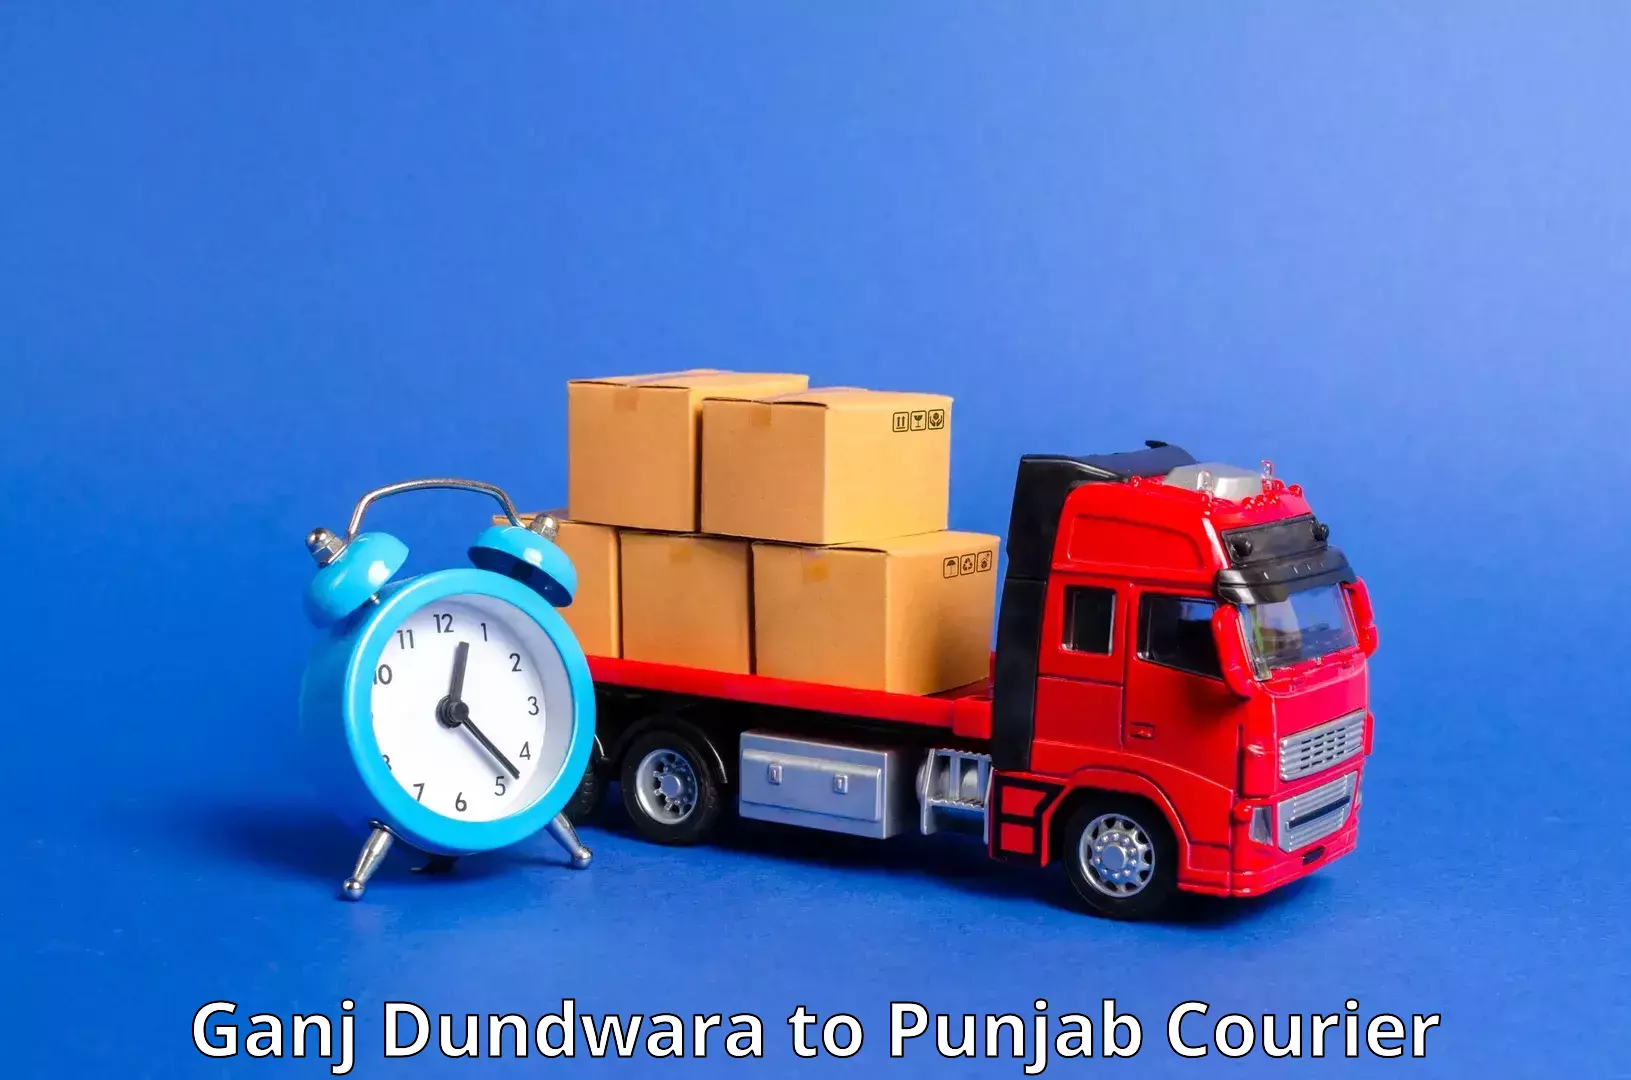 High-speed parcel service Ganj Dundwara to Mansa